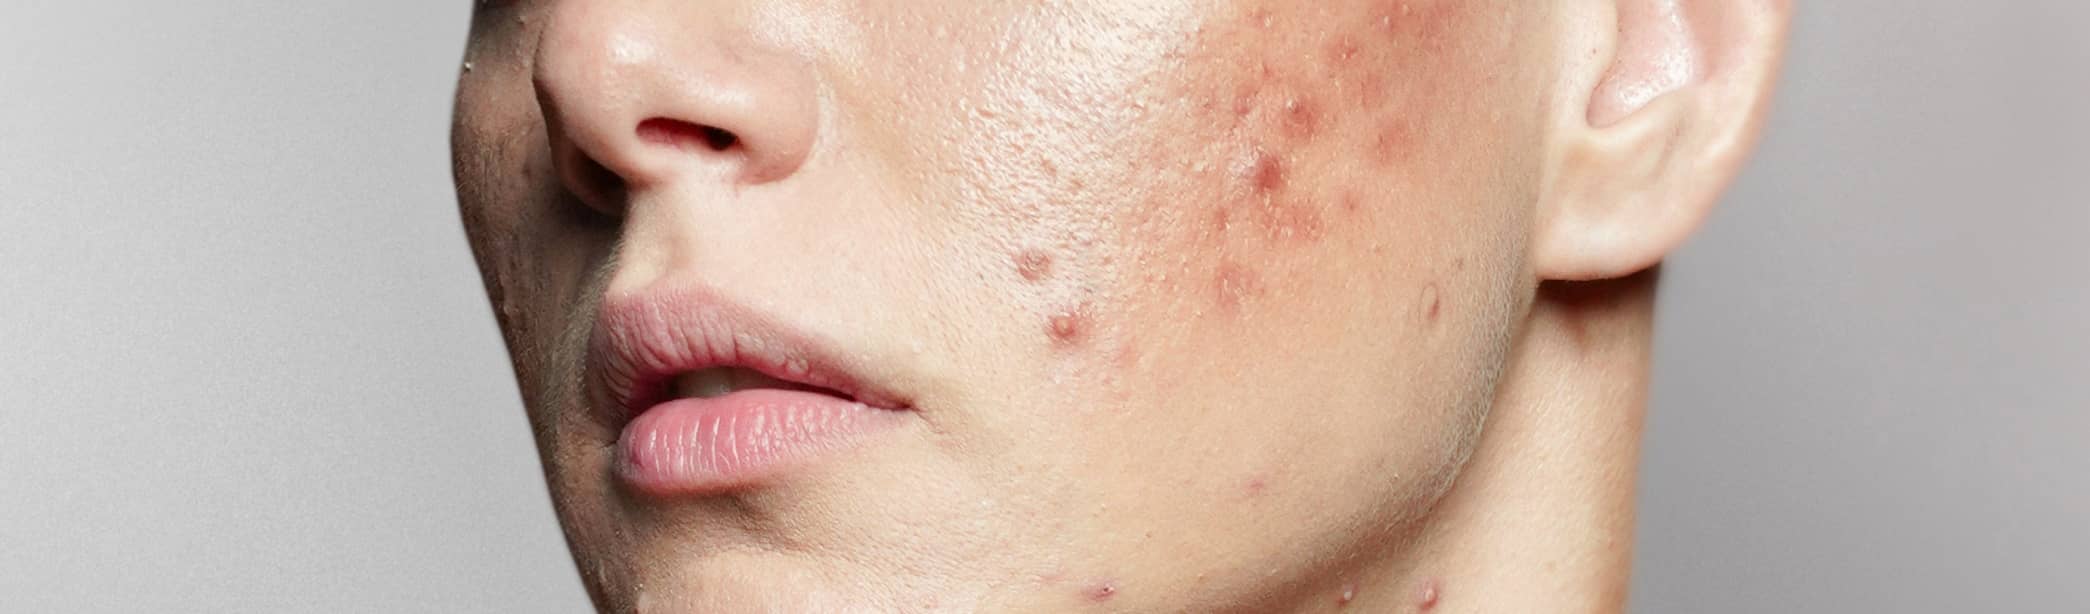 Comment supprimer les cicatrices liées à l'acné ? | Maison Albanéa | Aubagne